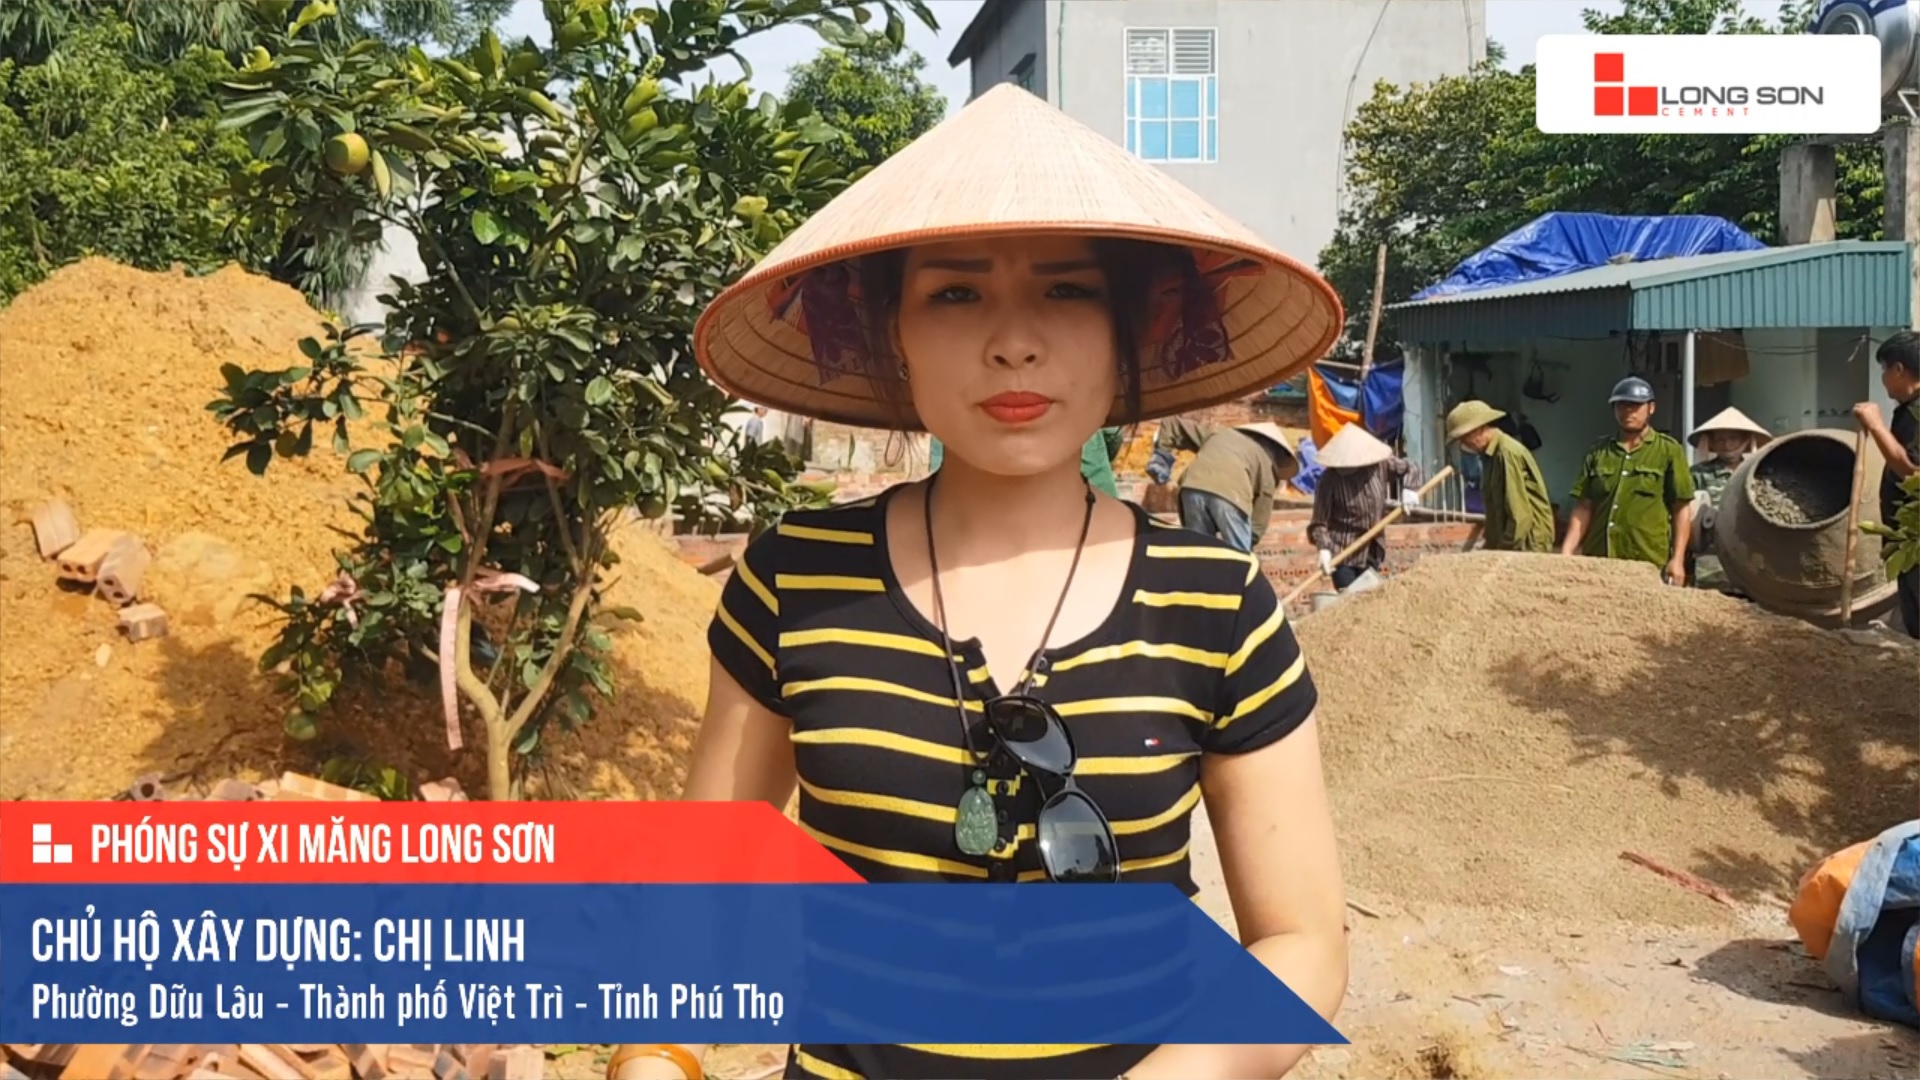 Phóng sự công trình sử dụng Xi măng Long Sơn tại Phú Thọ 09.09.2019 ...